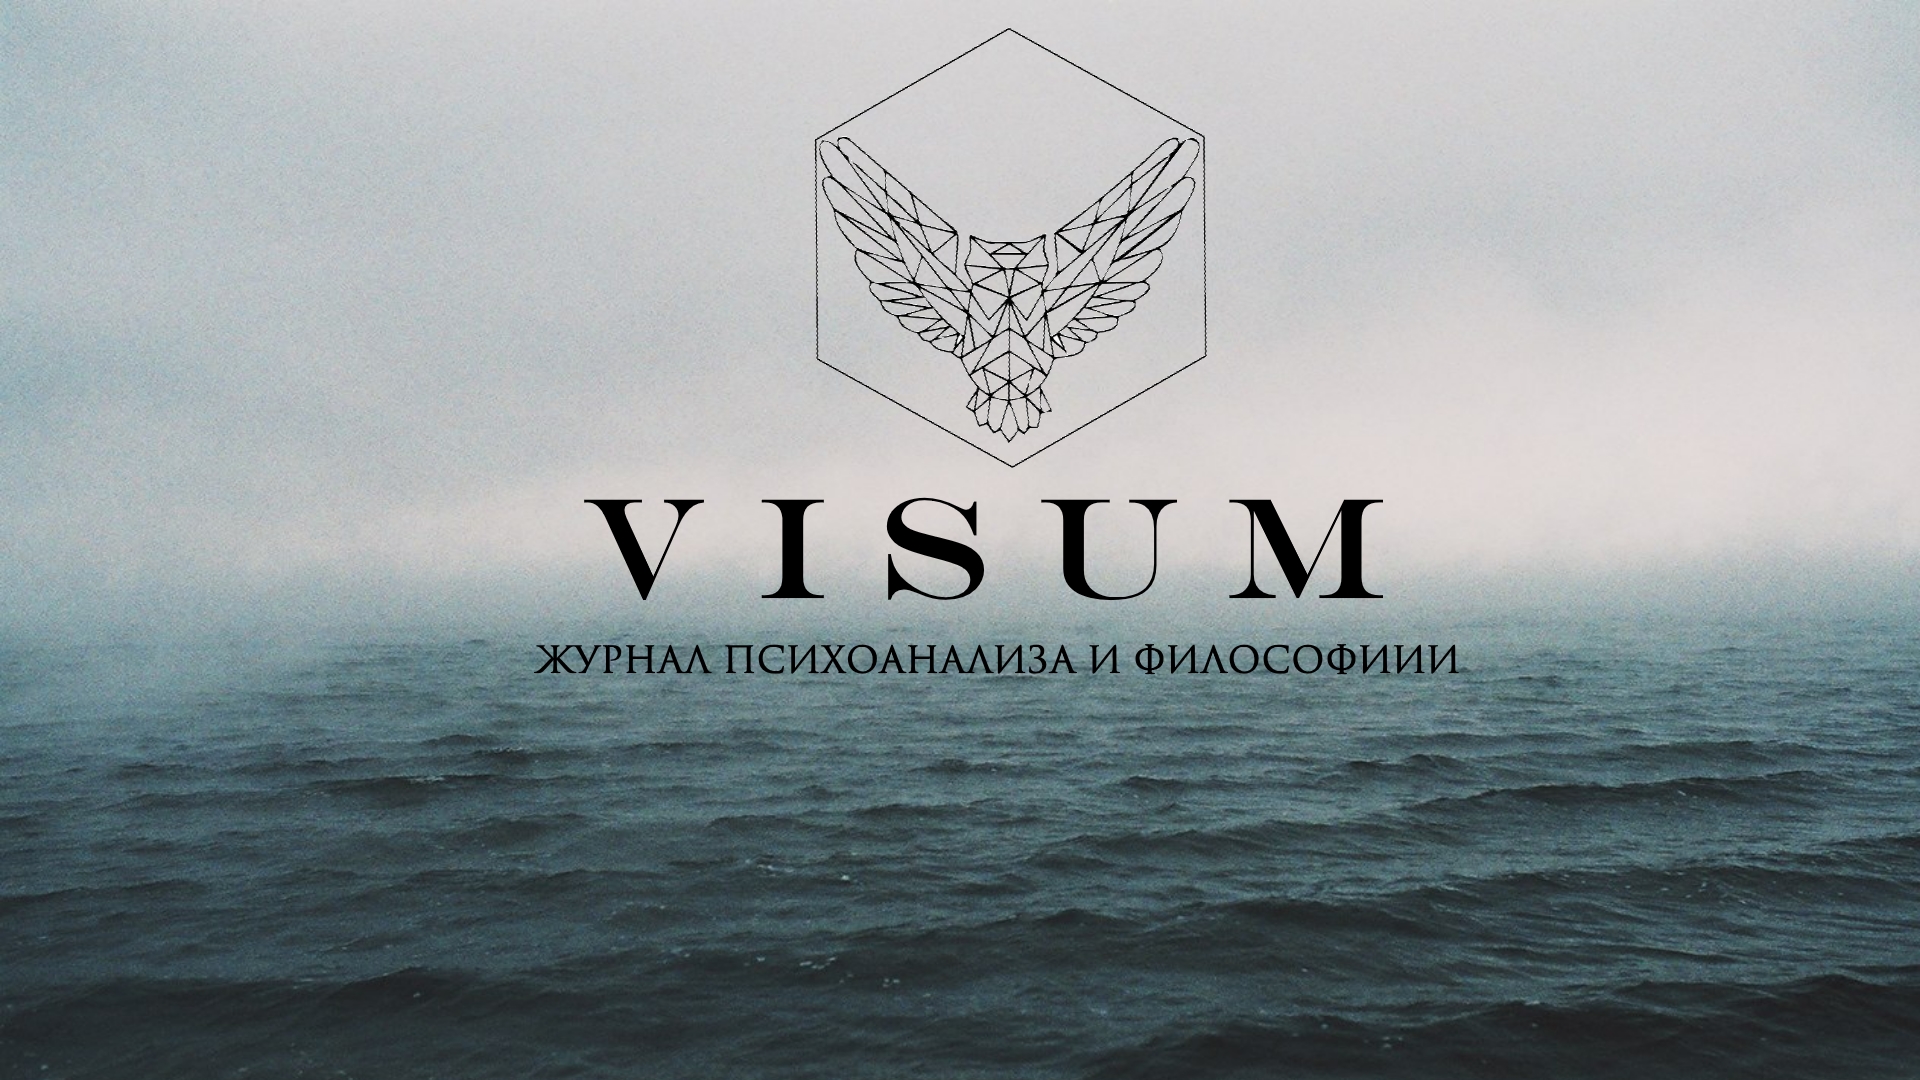 Журнал "Visum" выпуск №1